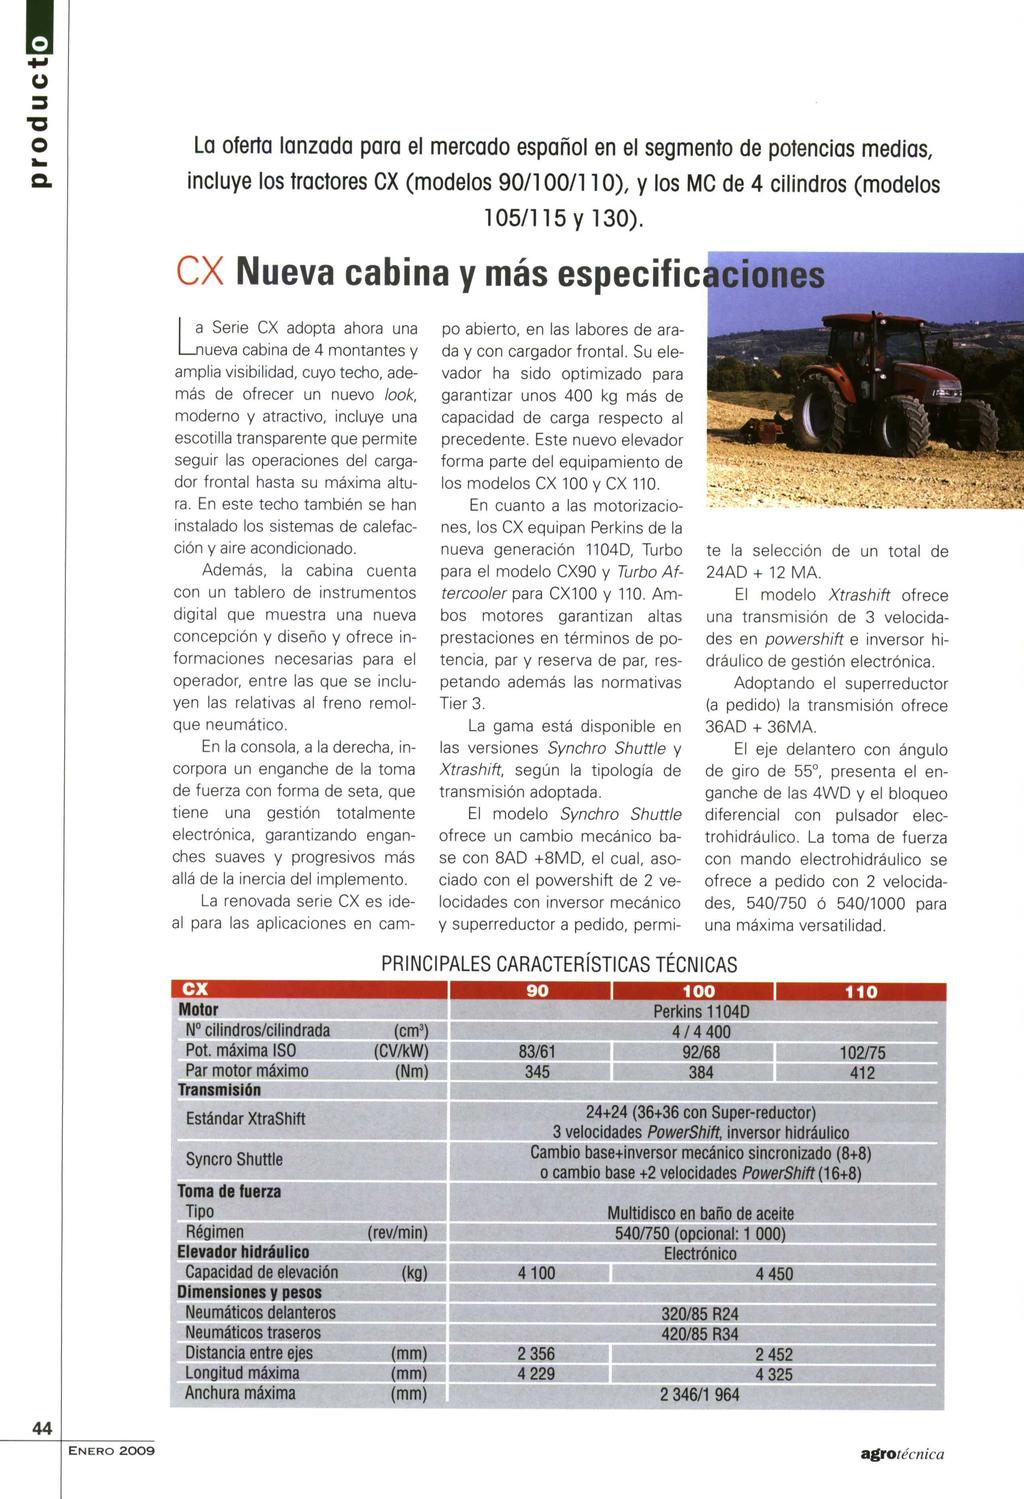 La oferta lanzada para el mercado español en el segmento de potencias medias, incluye los tractores CX (modelos 90/100/110), y los MC de 4 cilindros (modelos 105/115 y 130).